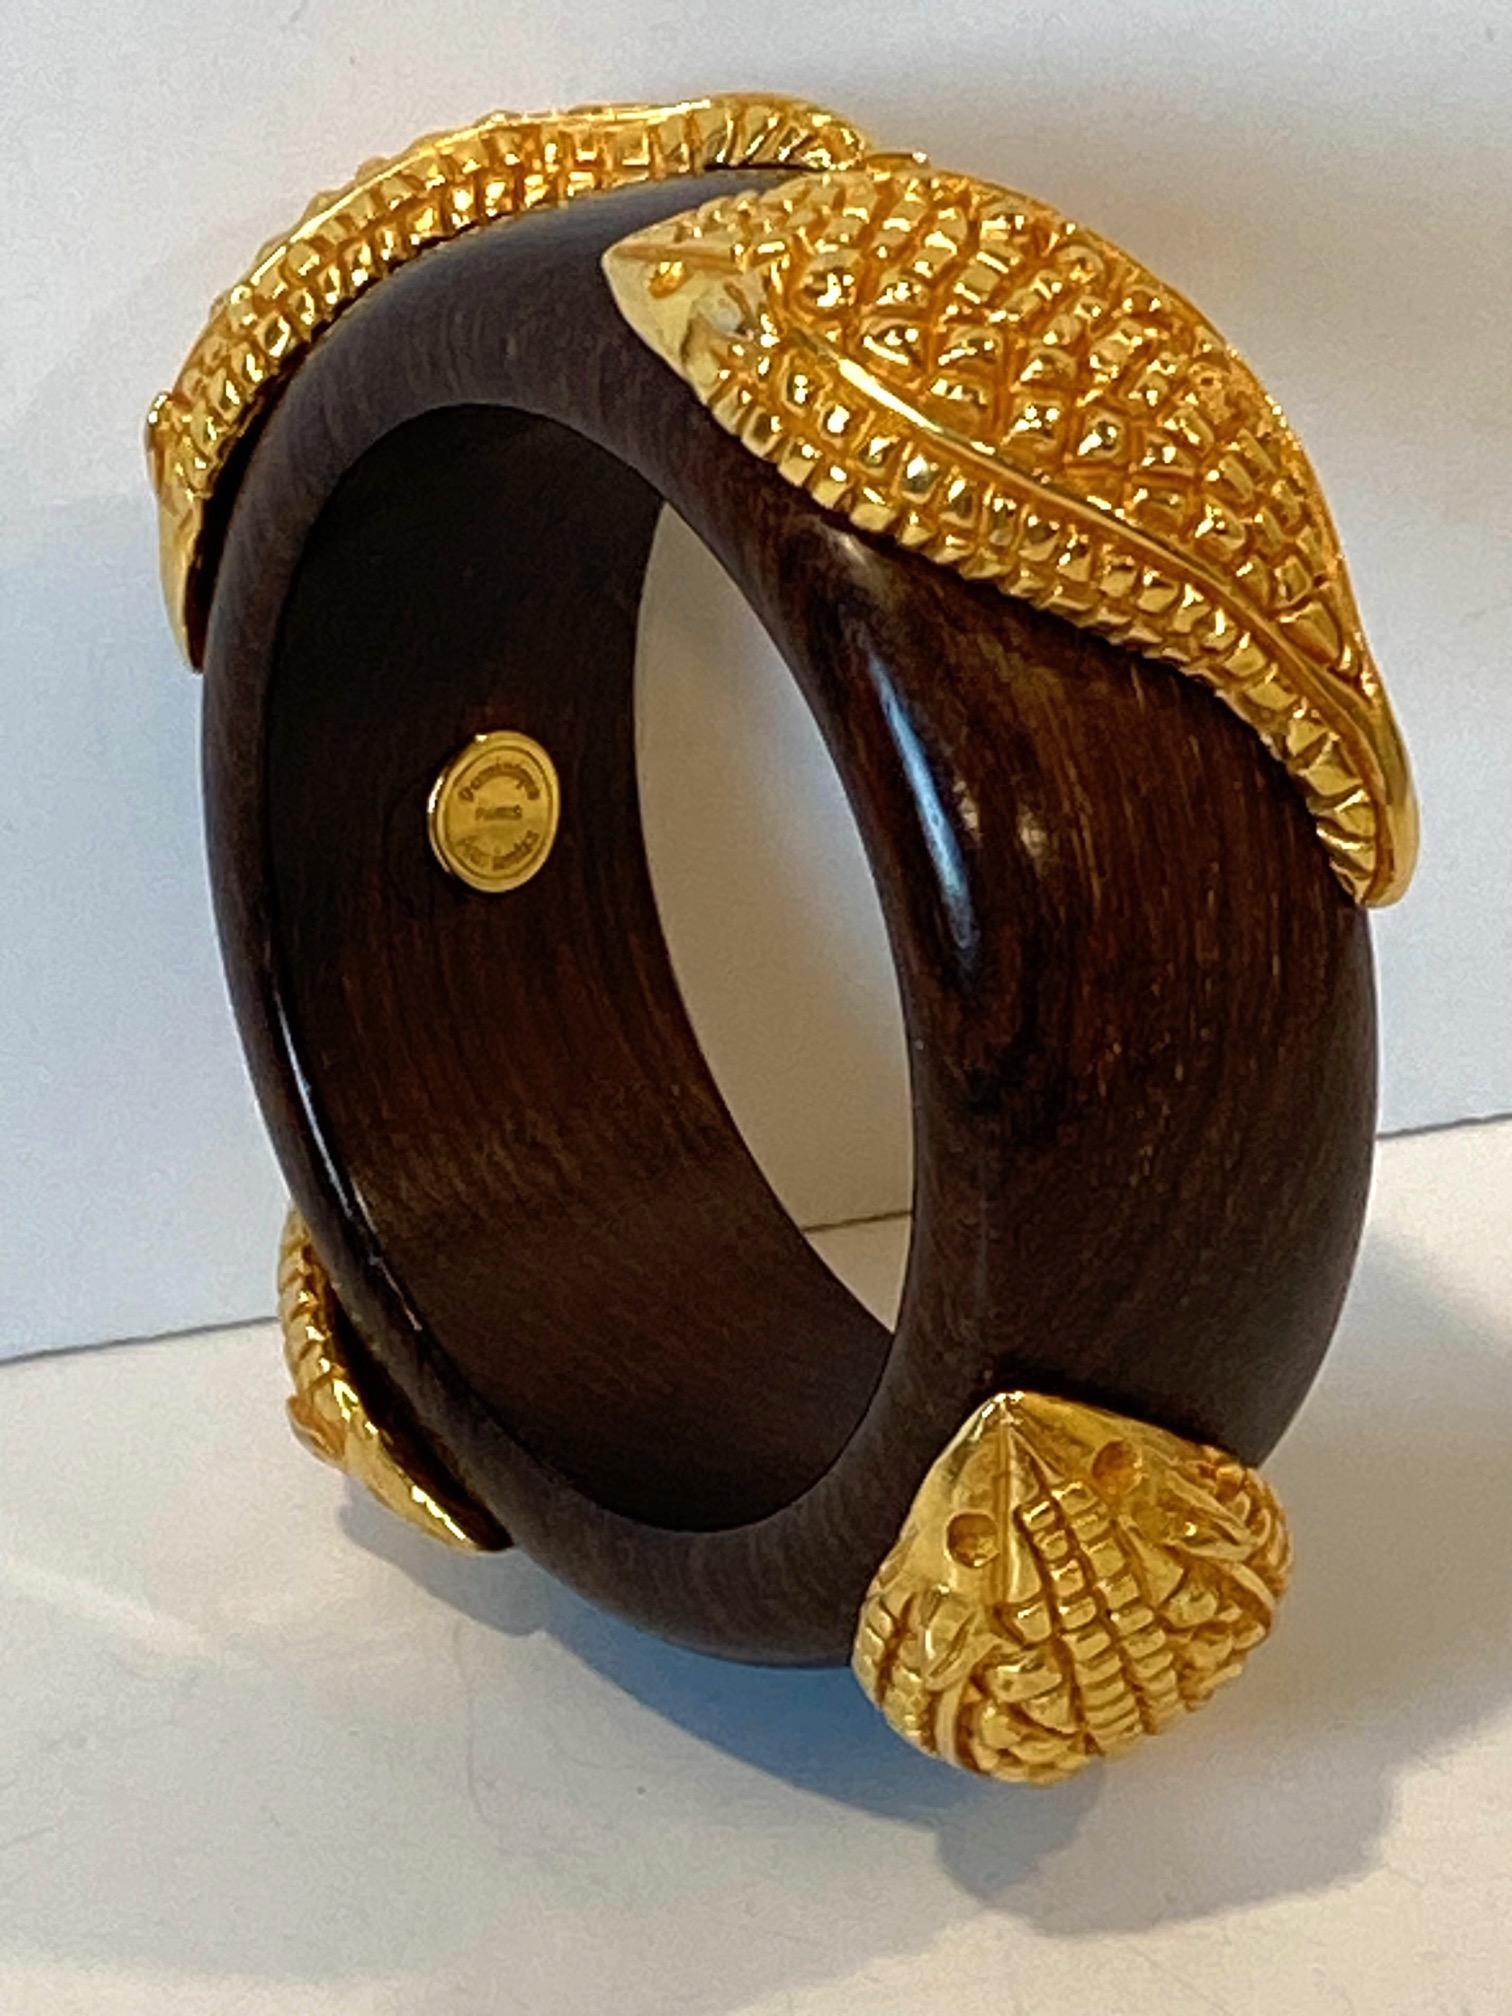 Voici un magnifique bracelet en bois et en vermeil des années 1980, réalisé par la créatrice de mode française Dominique Aurientis, de Paris. Elle a fondé sa marque d'accessoires et de bijoux de mode en 1986. Ce bracelet est composé d'un bracelet en